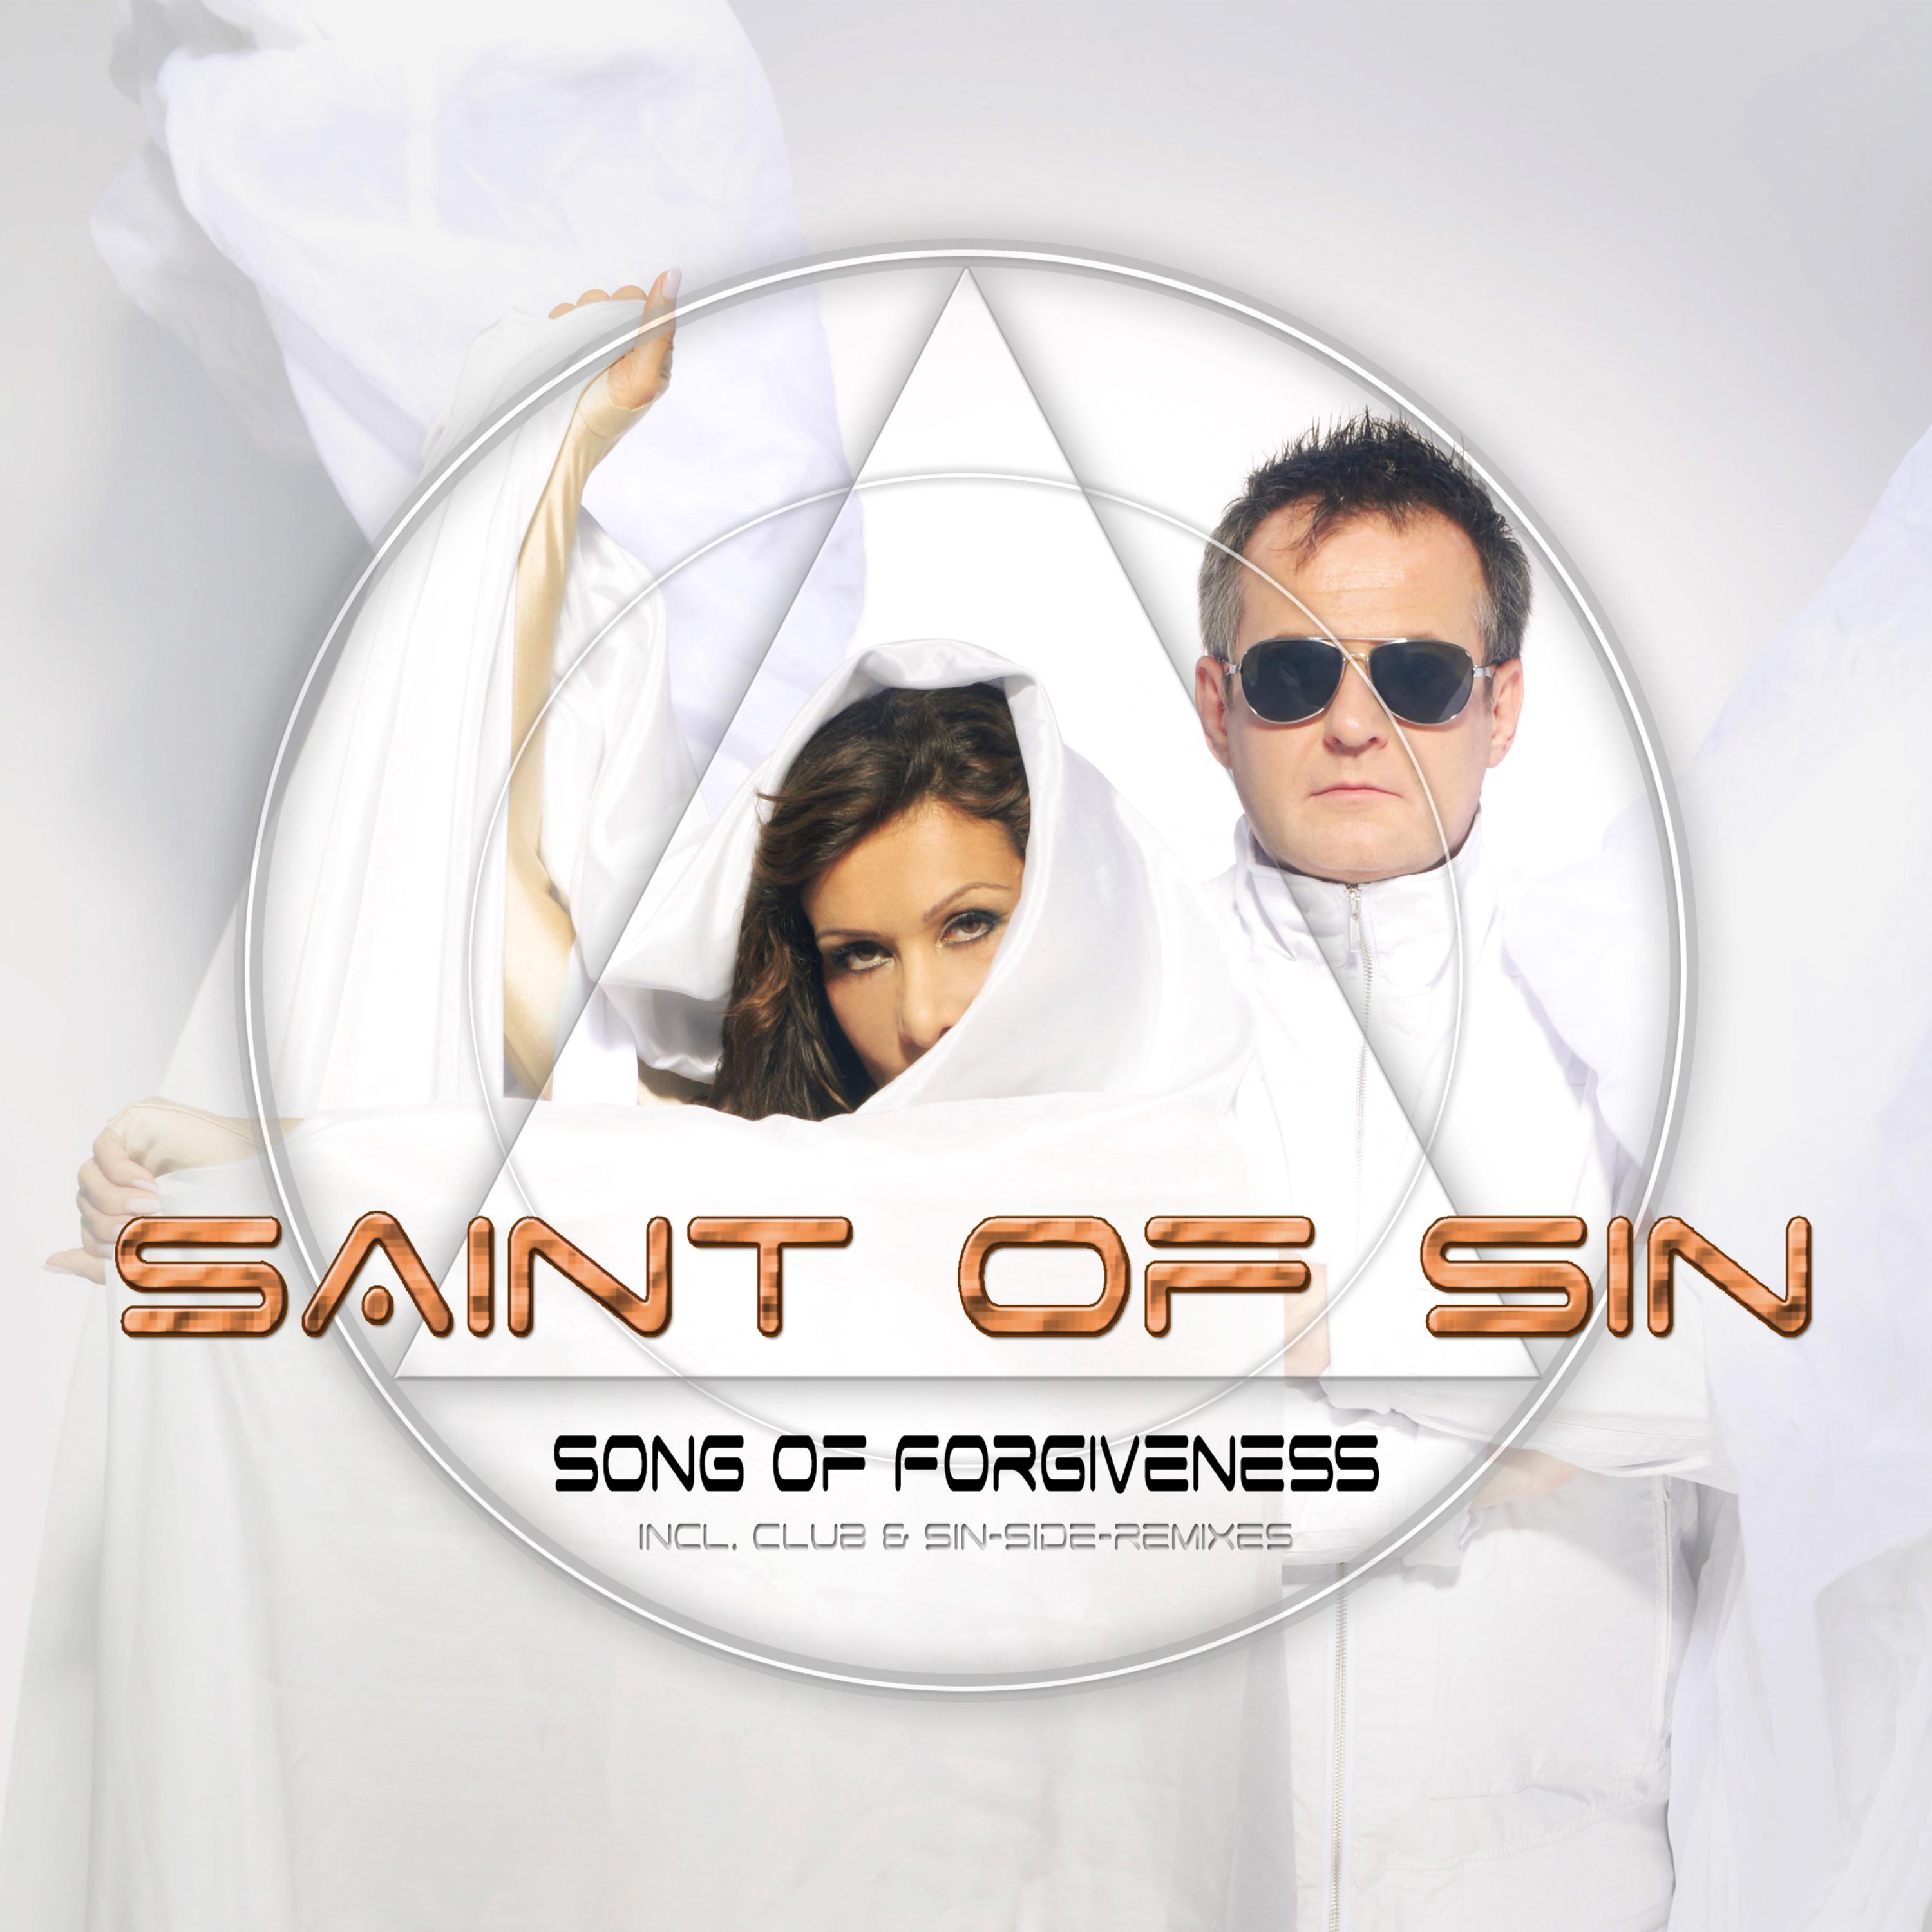 Song of Forgiveness (Radio Mix)